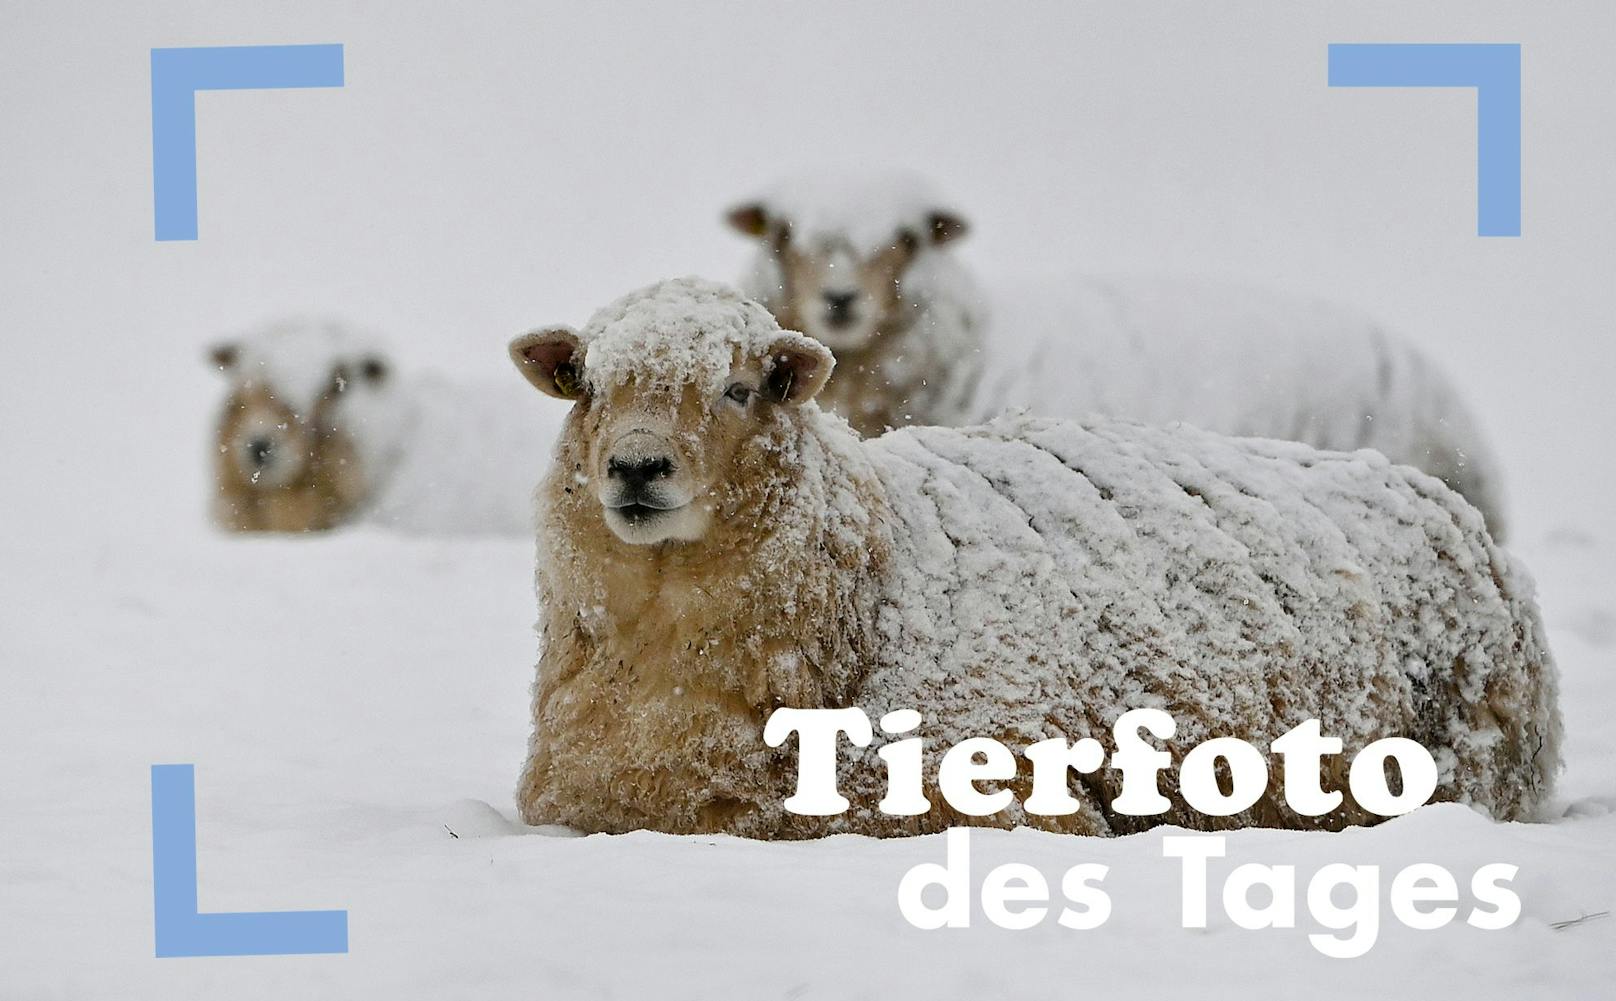 Der Schneefall kam auch für Tiere überraschend. Diese Schafe allerdings betrachten ihn wohl eher als Decke.